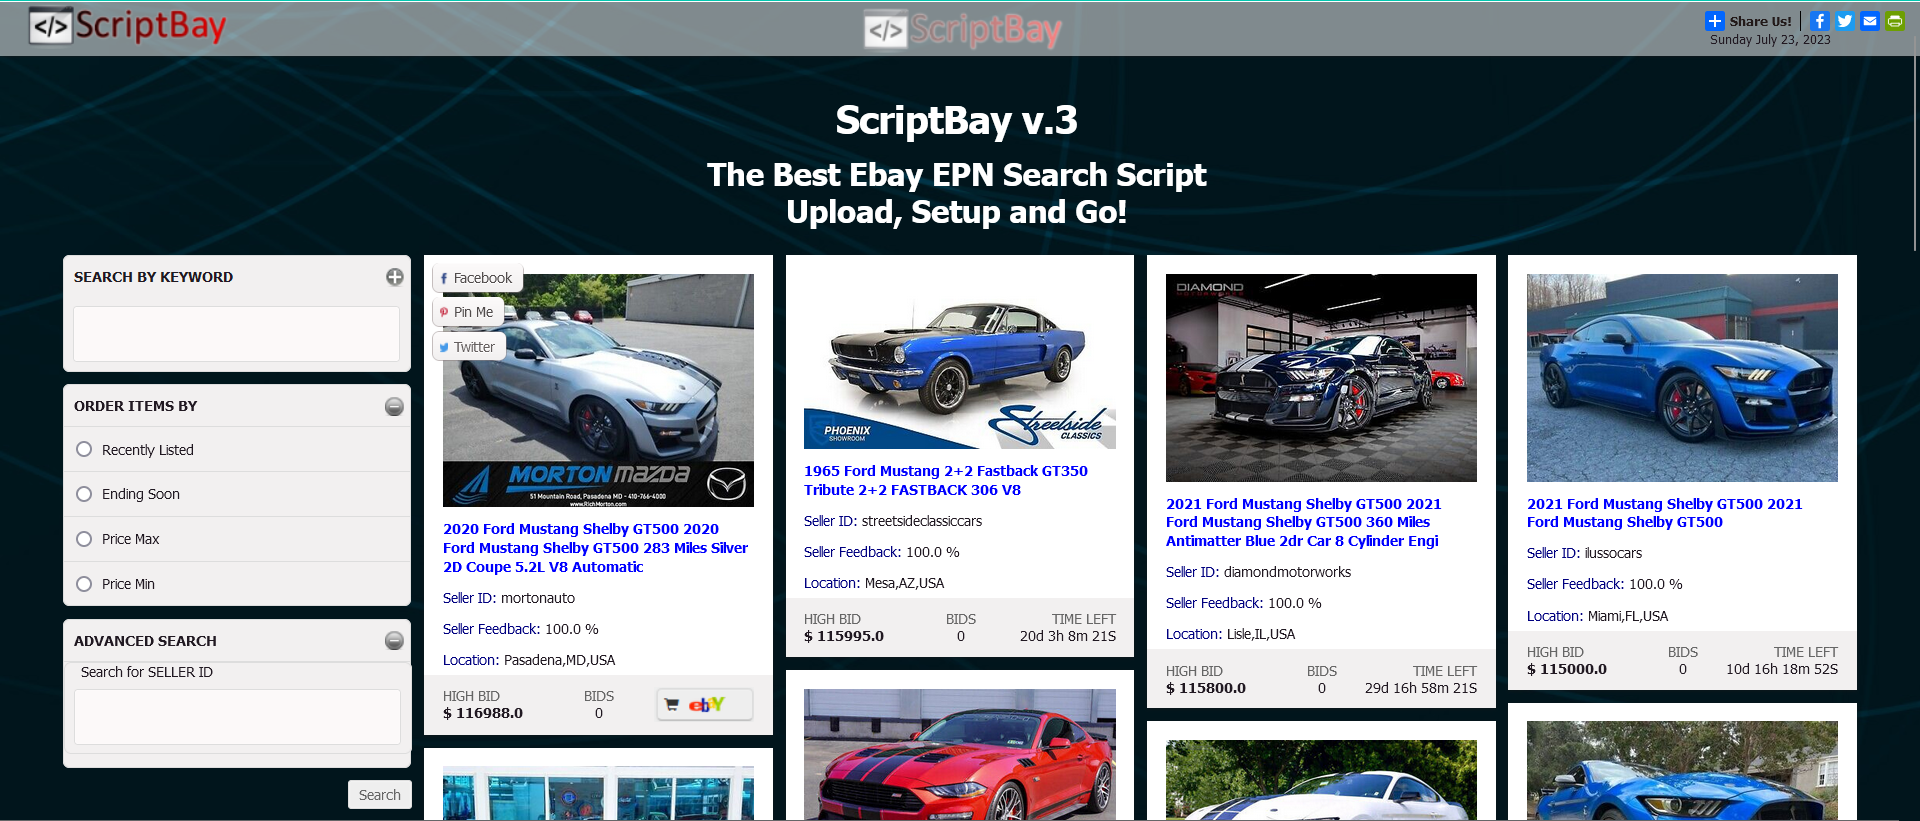 ScriptBay - Best eBay EPN Search